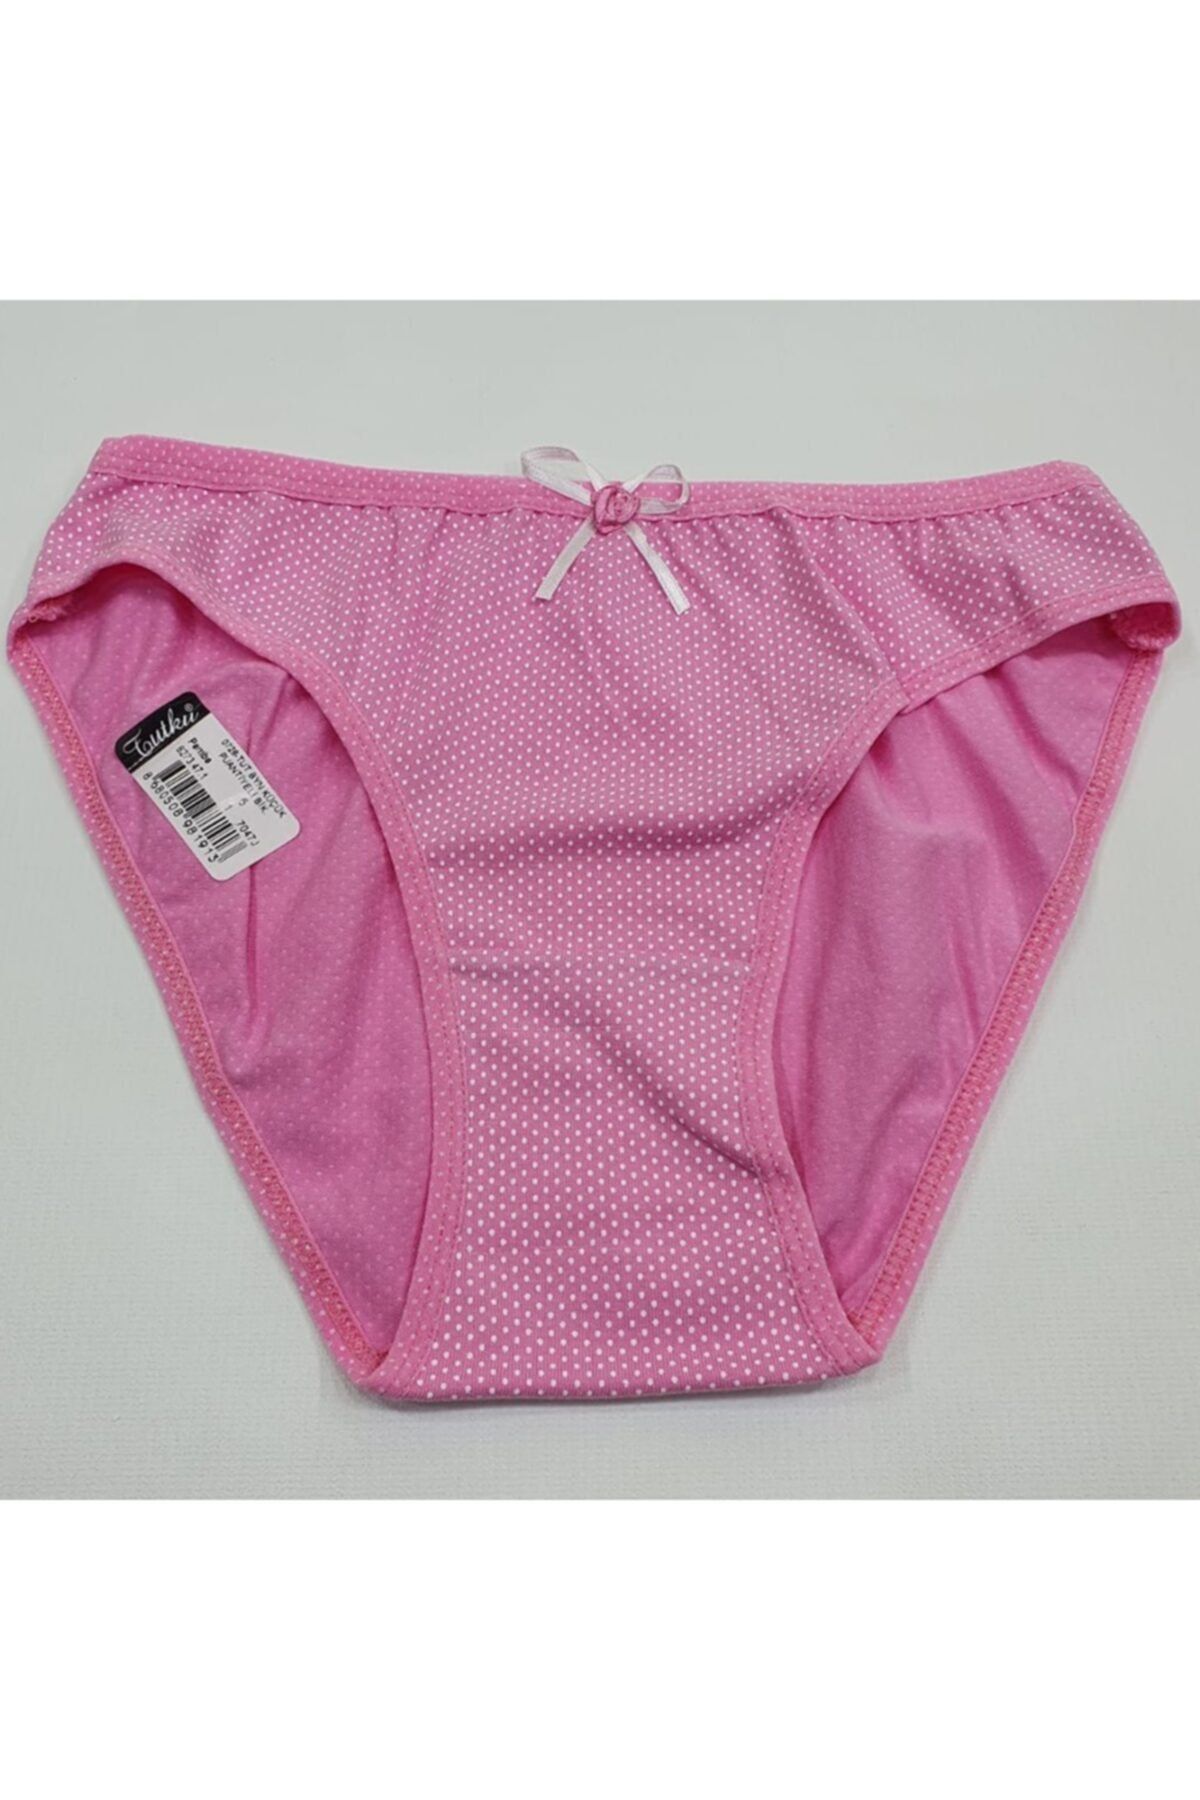 Tutku Kadın Pembe  Küçük Puantiyeli Bikini Standart Beden 3lü Paket Kf-puantiye-01